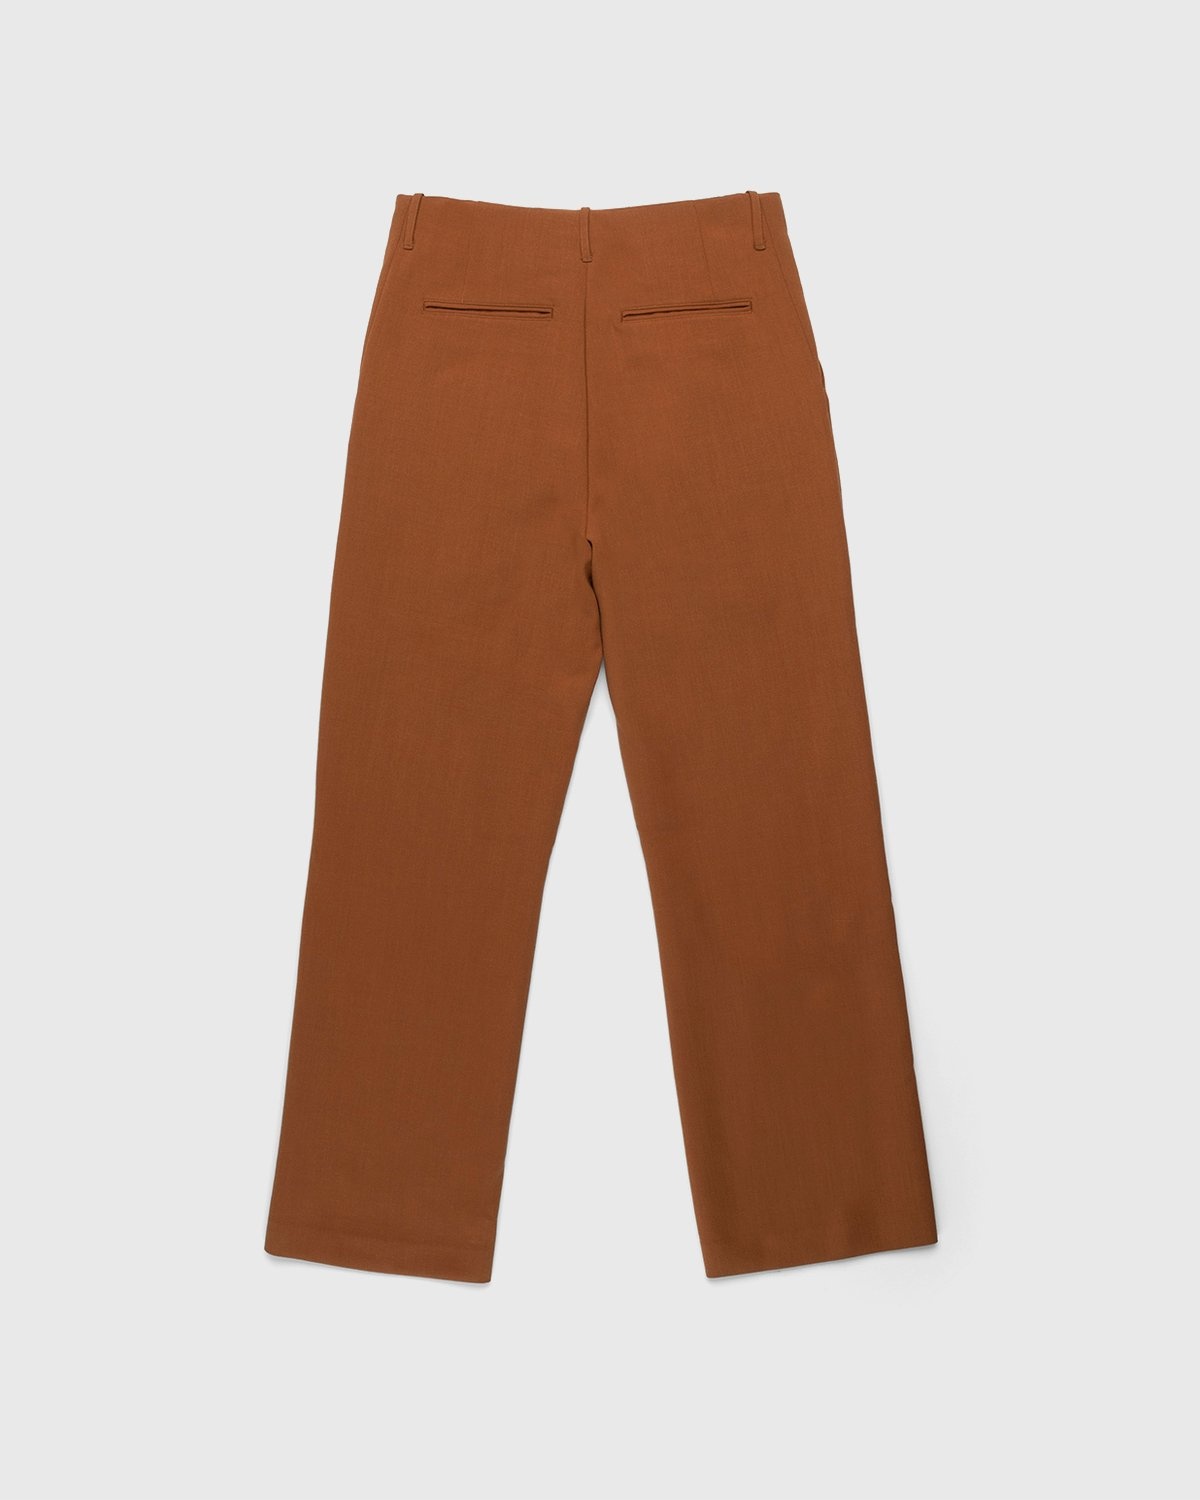 Auralee – Ultra-Fine Wool Pants Dark Orange - Trousers - Orange - Image 2